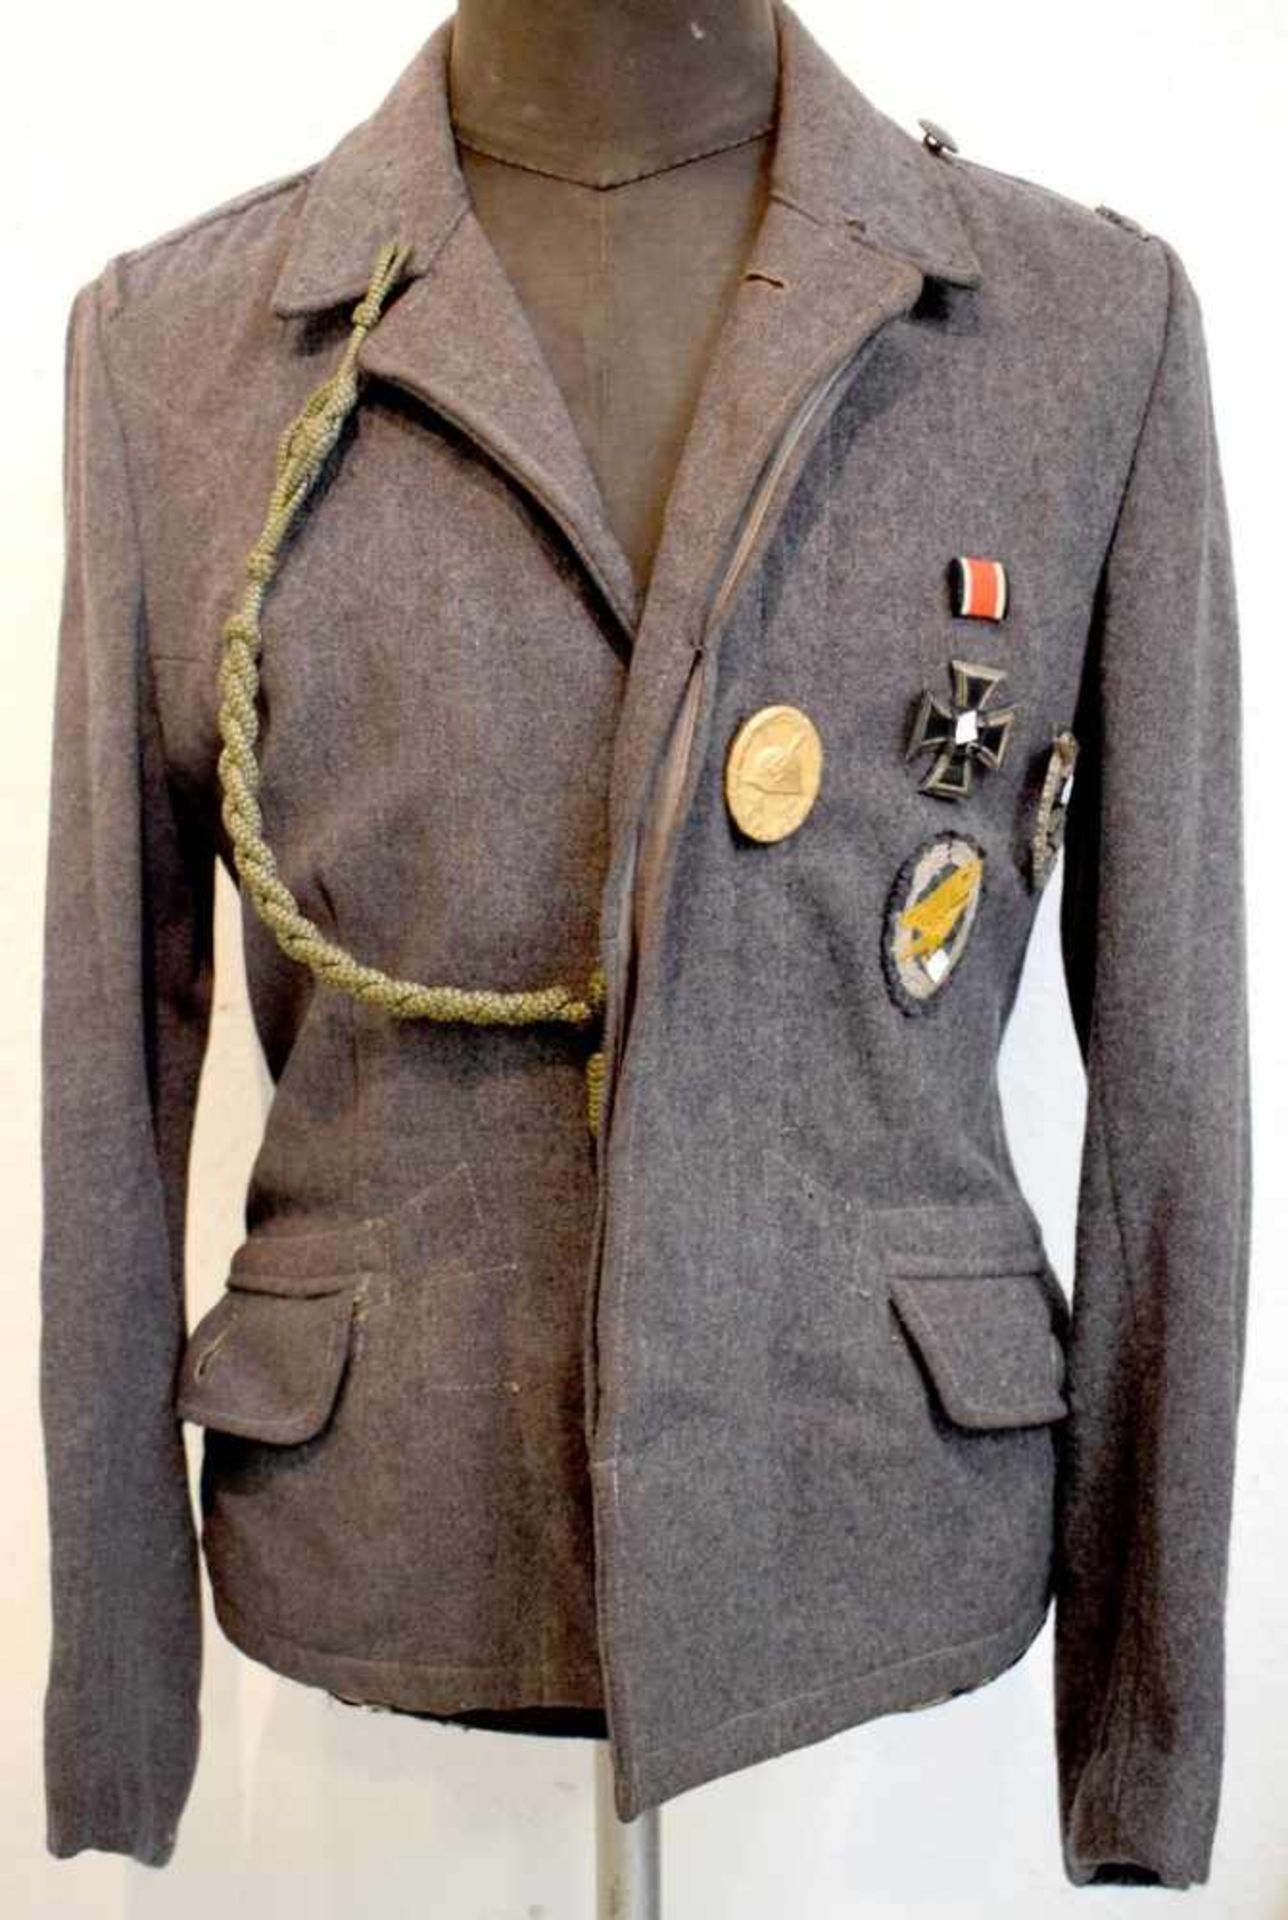 Uniformjacke mit Ordengraue Uniformjacke, mit drei Orden und einem Aufnäher, Luftwaffe, um 1930/40